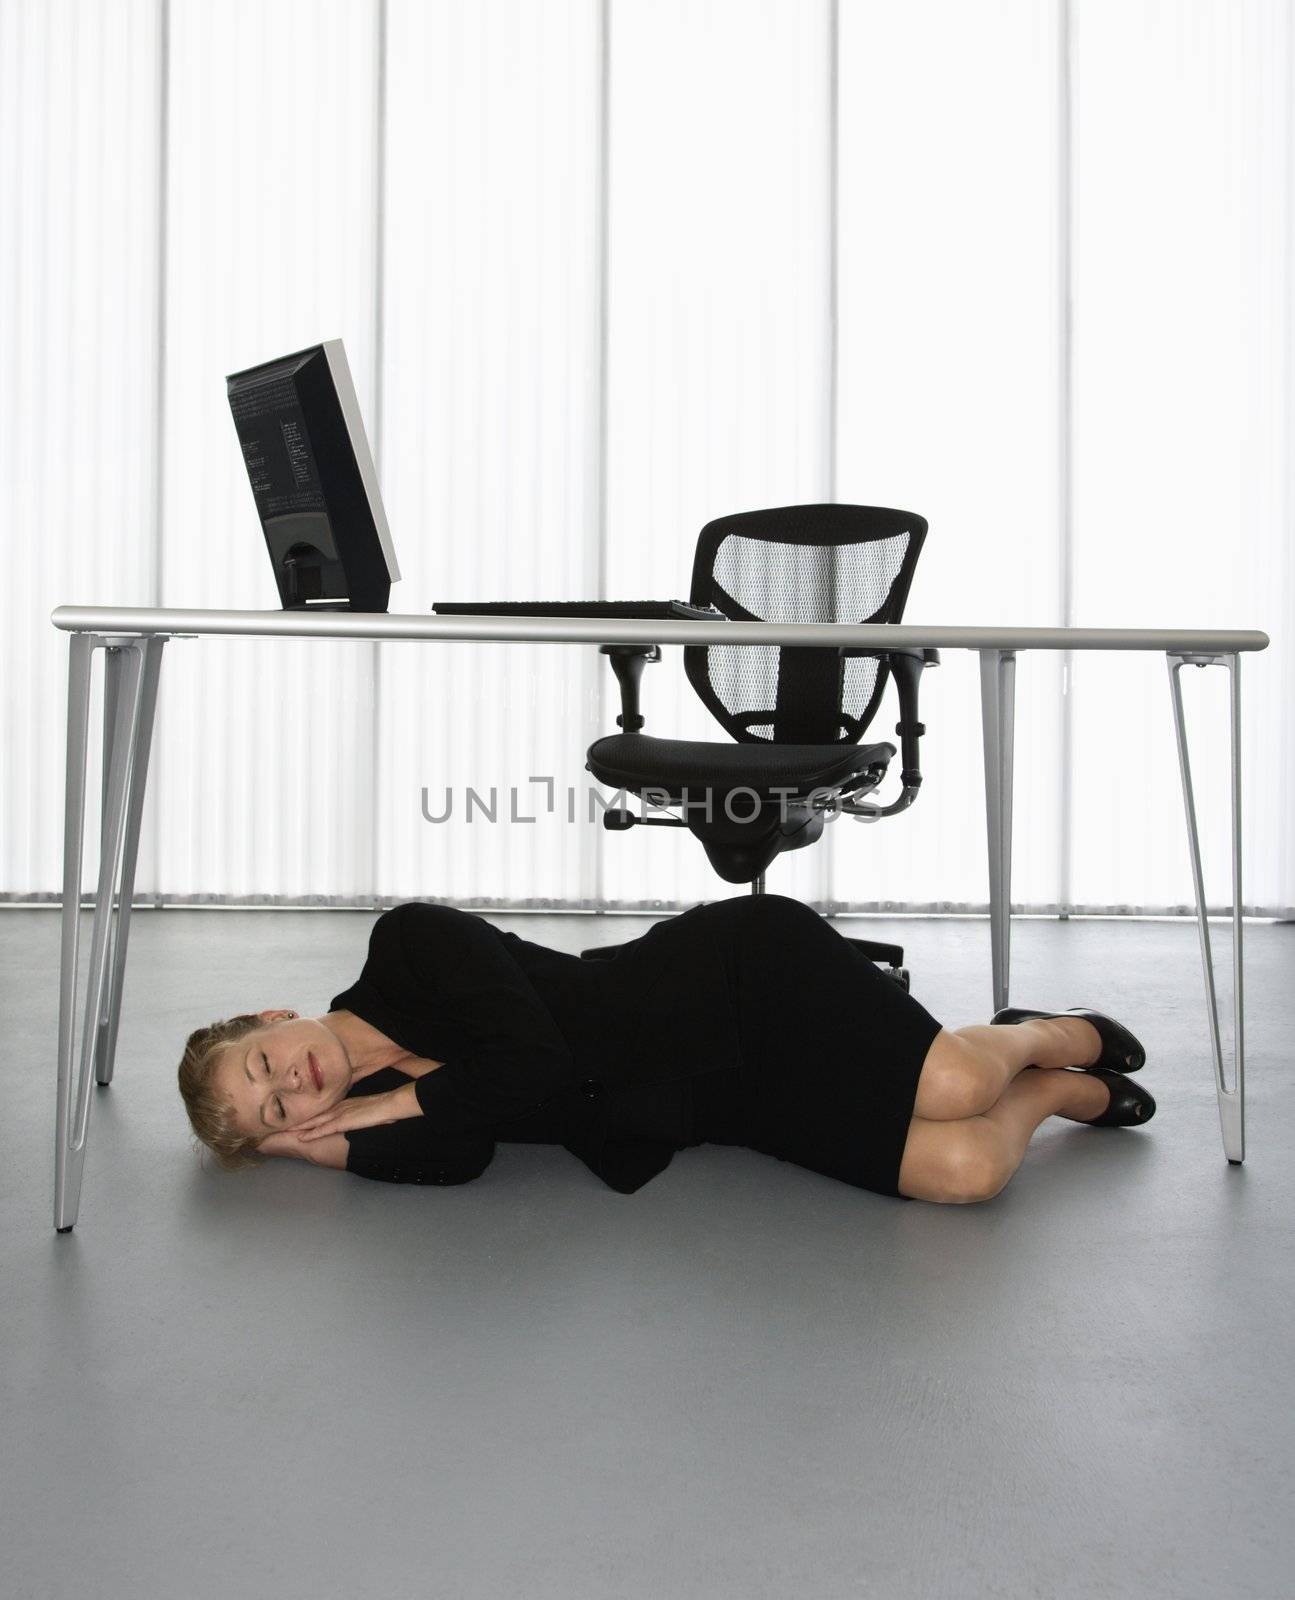 Caucasian businesswoman sleeping on floor under computer desk.